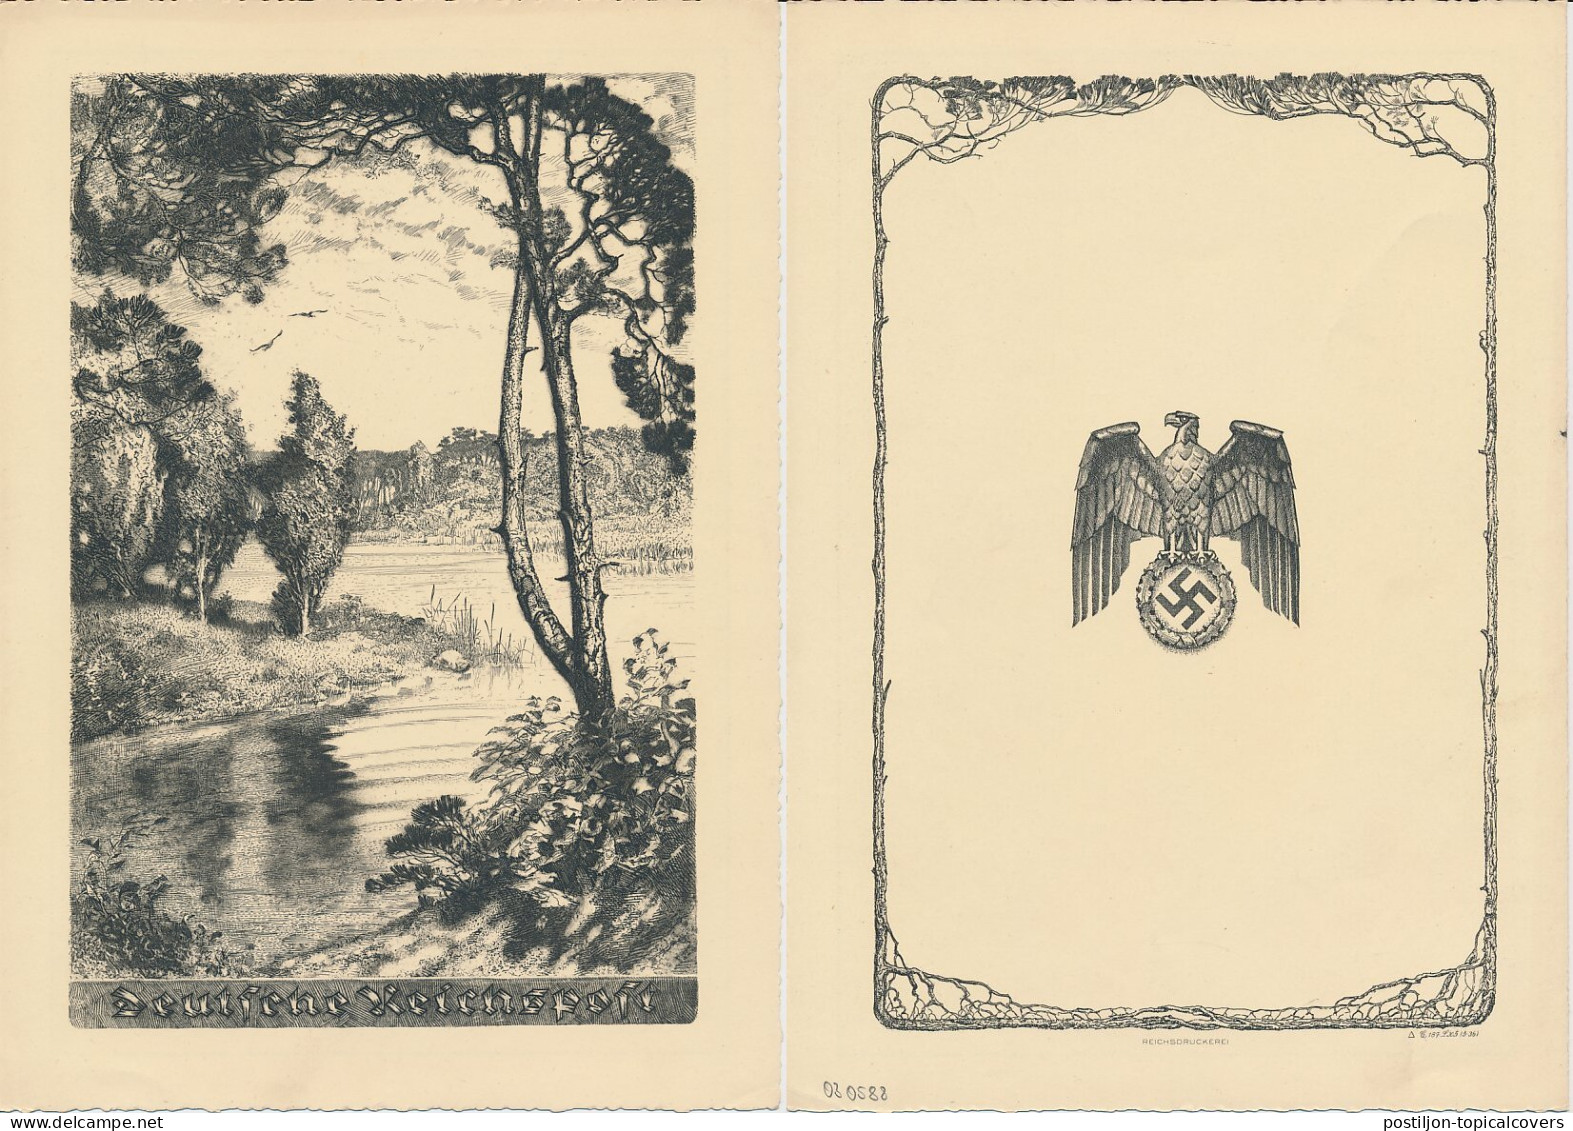 Telegram Germany 1937 - Schmuckblatt Telegramme Heather Landscape - Eagle - Lake - Swastika - Bomen